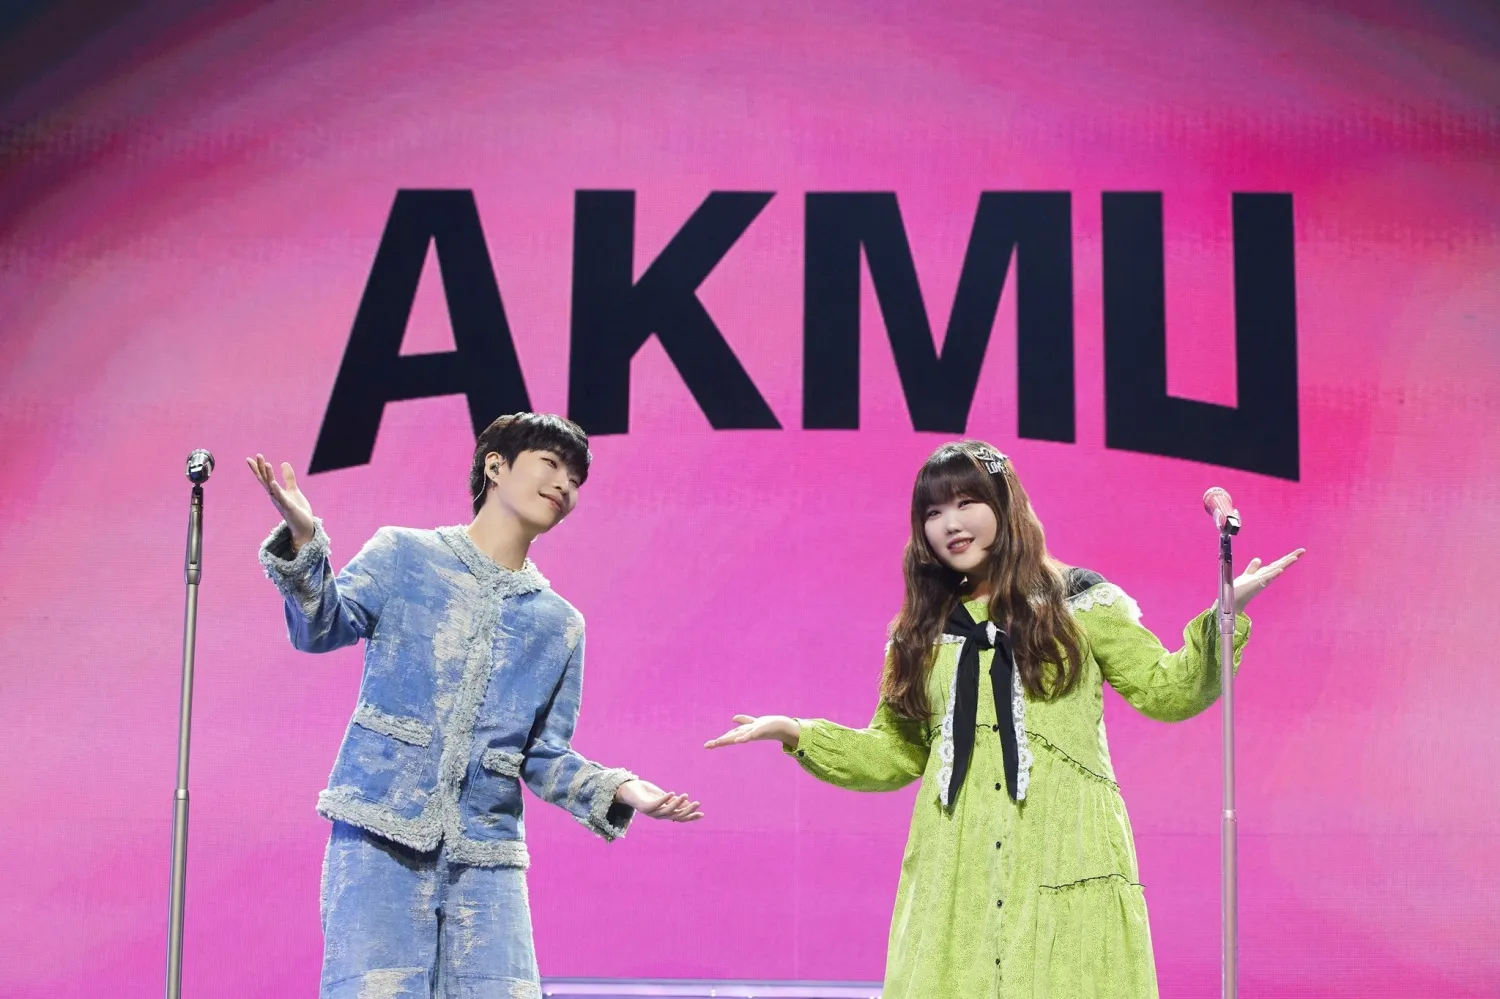 AKMU, 데뷔 10년 만에 공식 팬덤명 공개 - 읽어보세요!